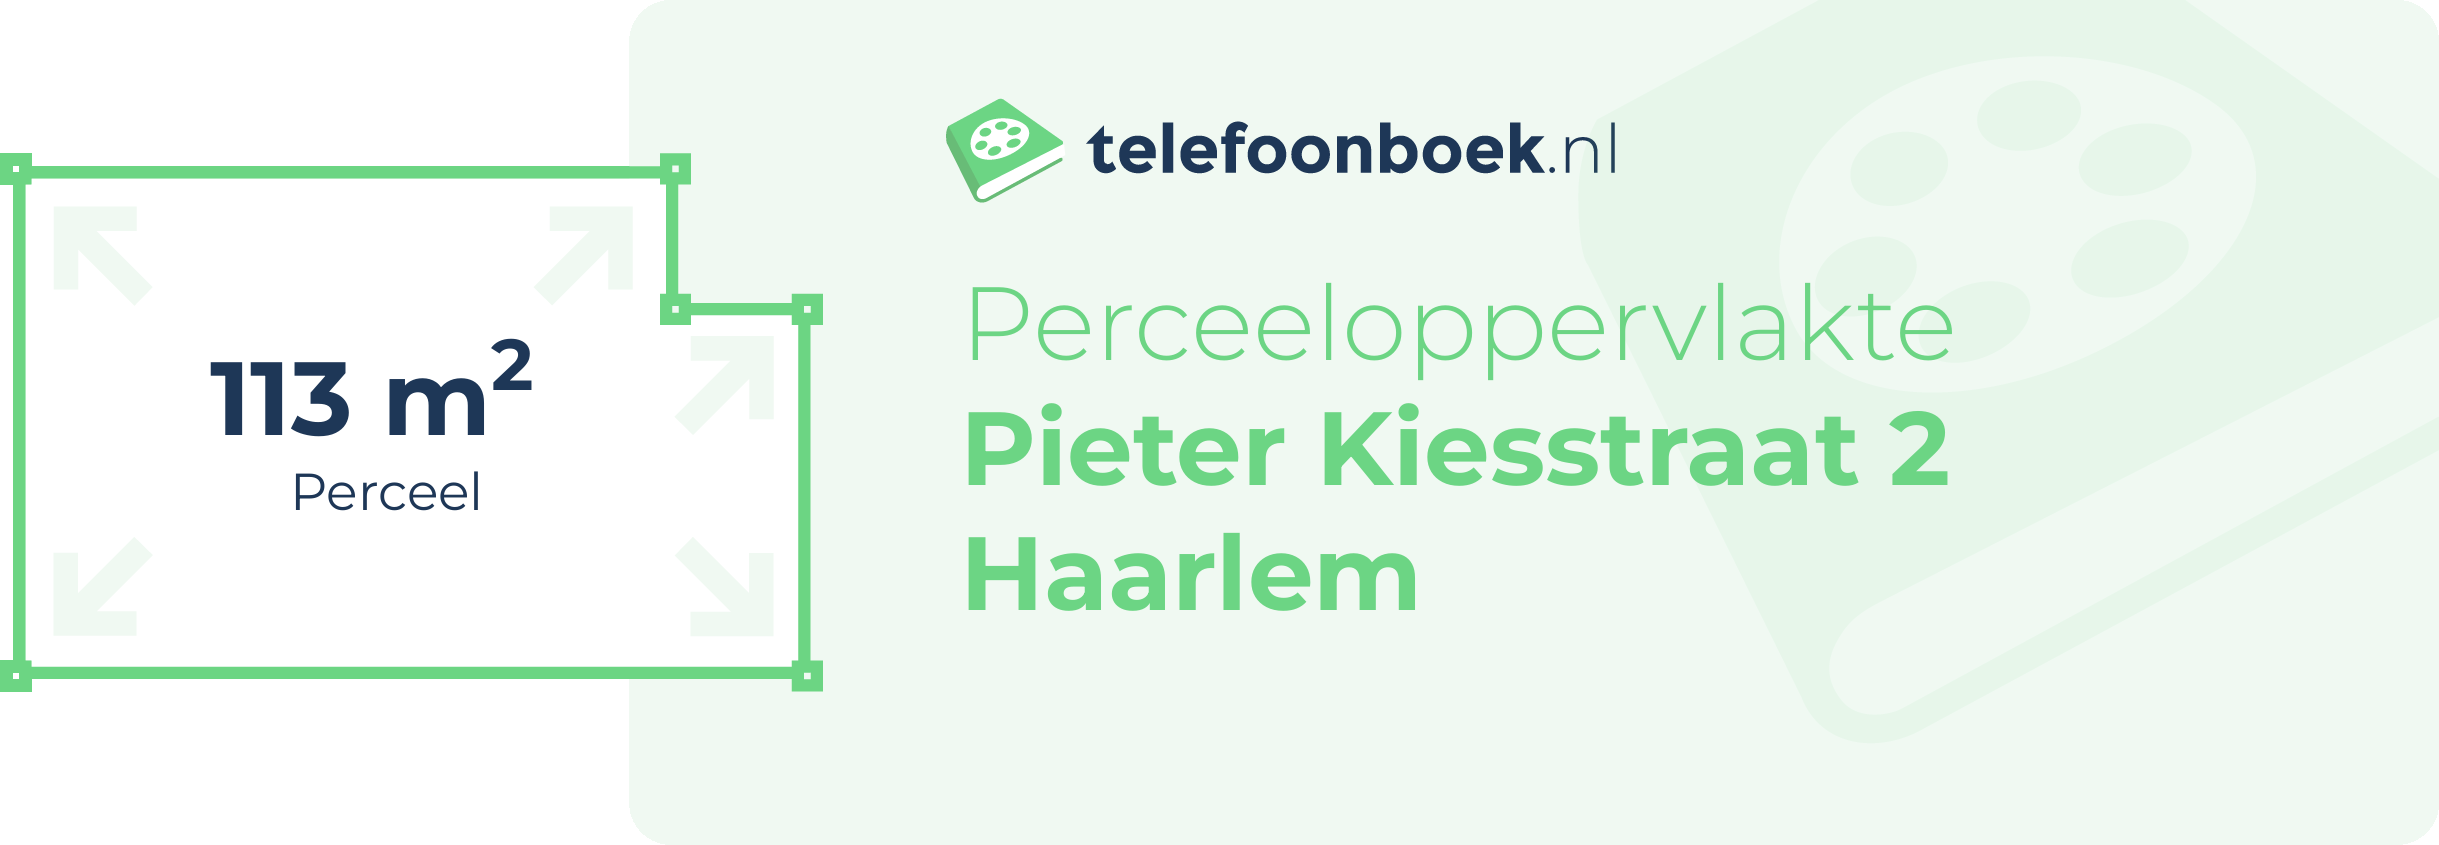 Perceeloppervlakte Pieter Kiesstraat 2 Haarlem